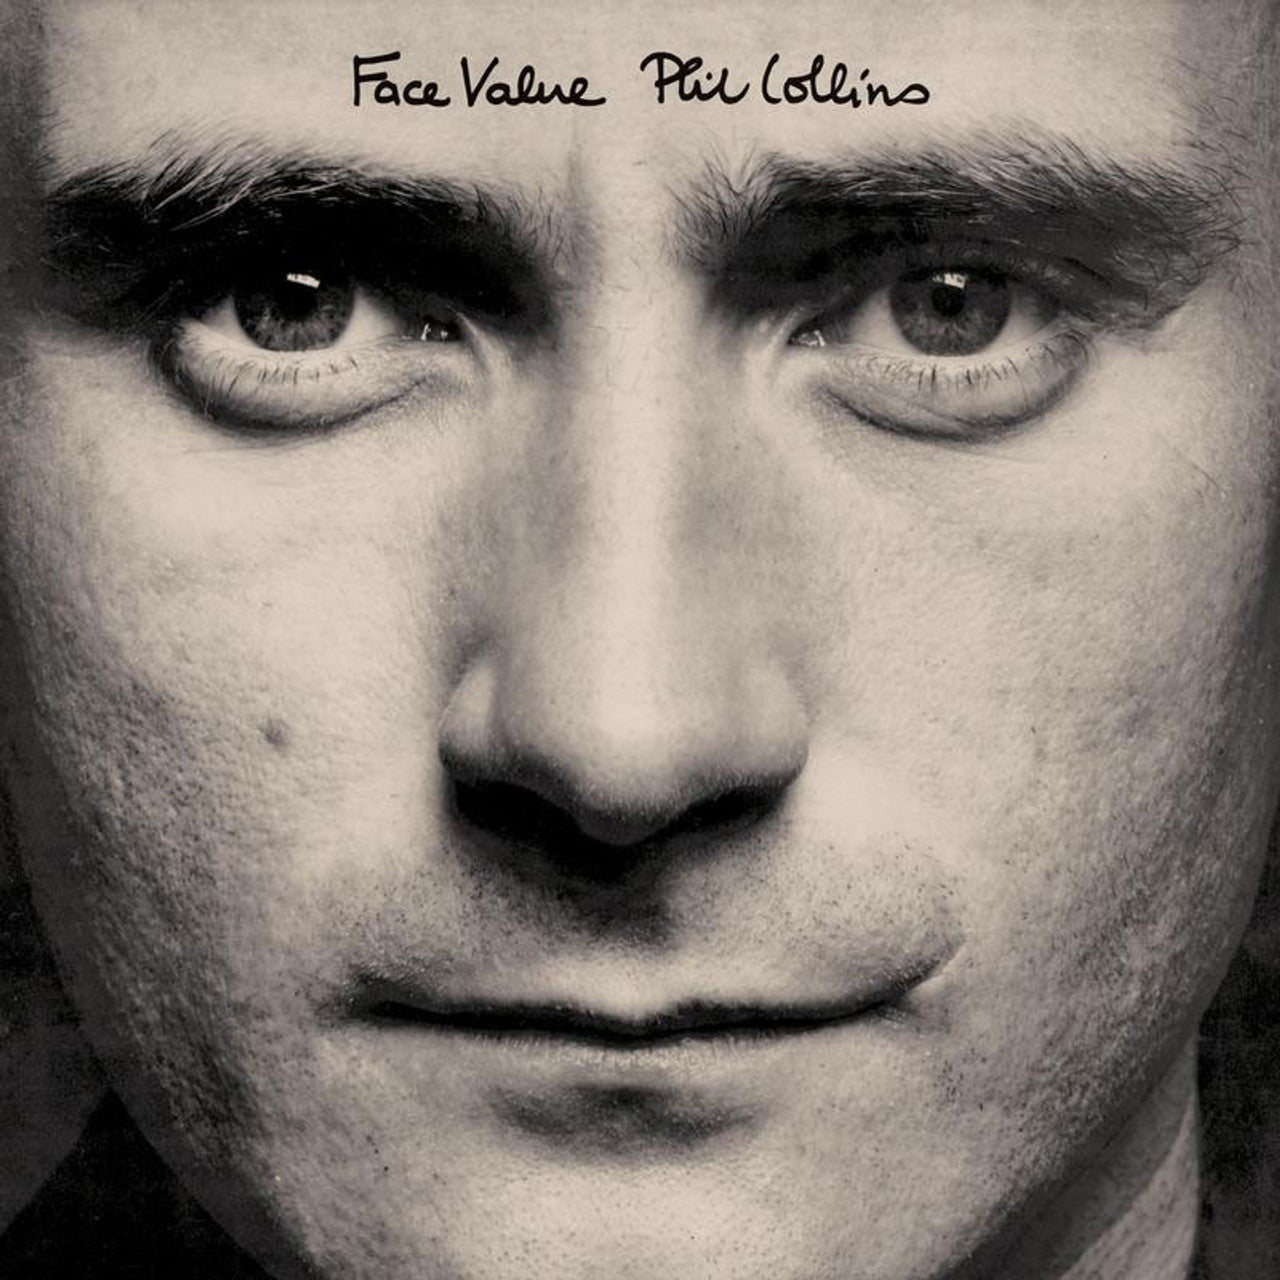 Phil Collins - Face Value [2LP] (180 Gram 45RPM Audiophile Vinyl, Analogue Productions)